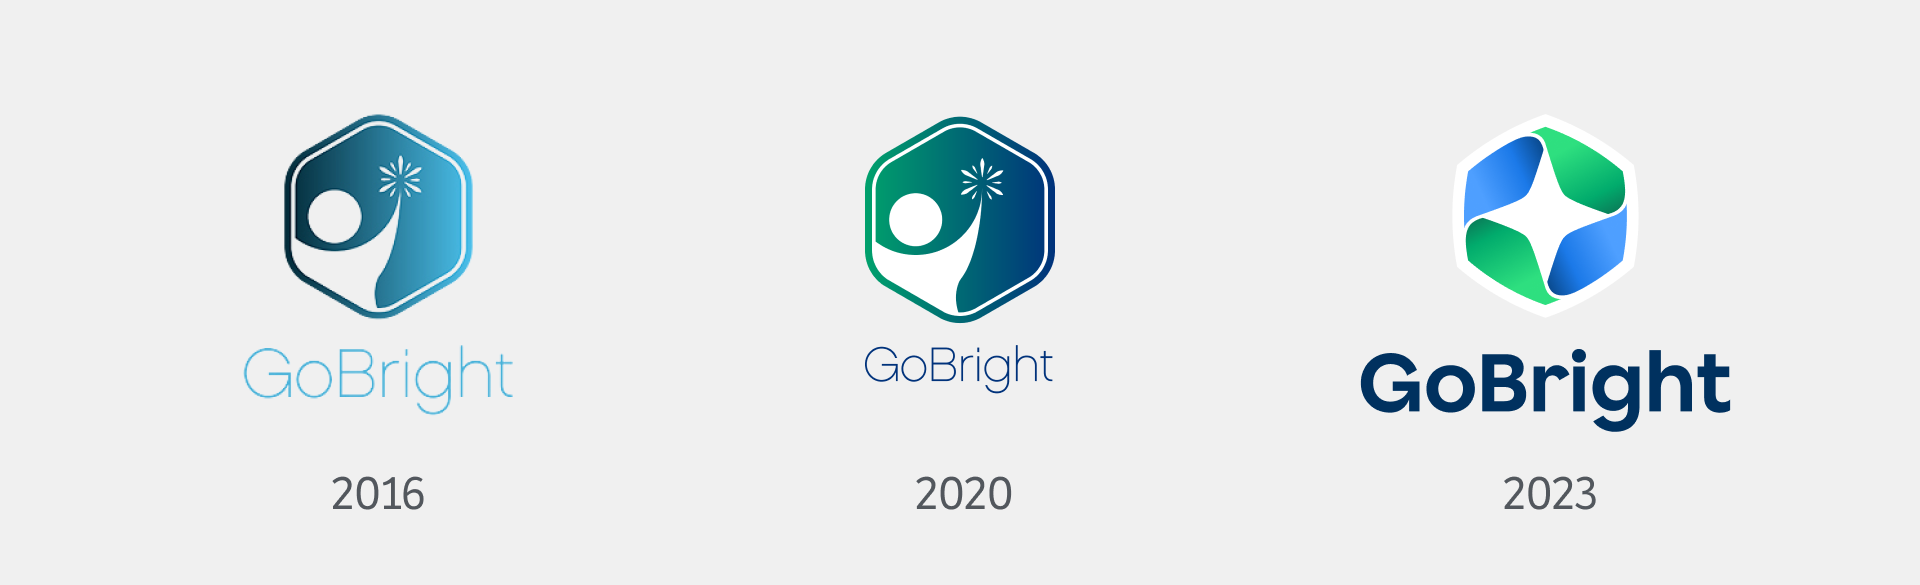 GoBright - Identità aziendale - logo per tutto l'anno - Rebranding